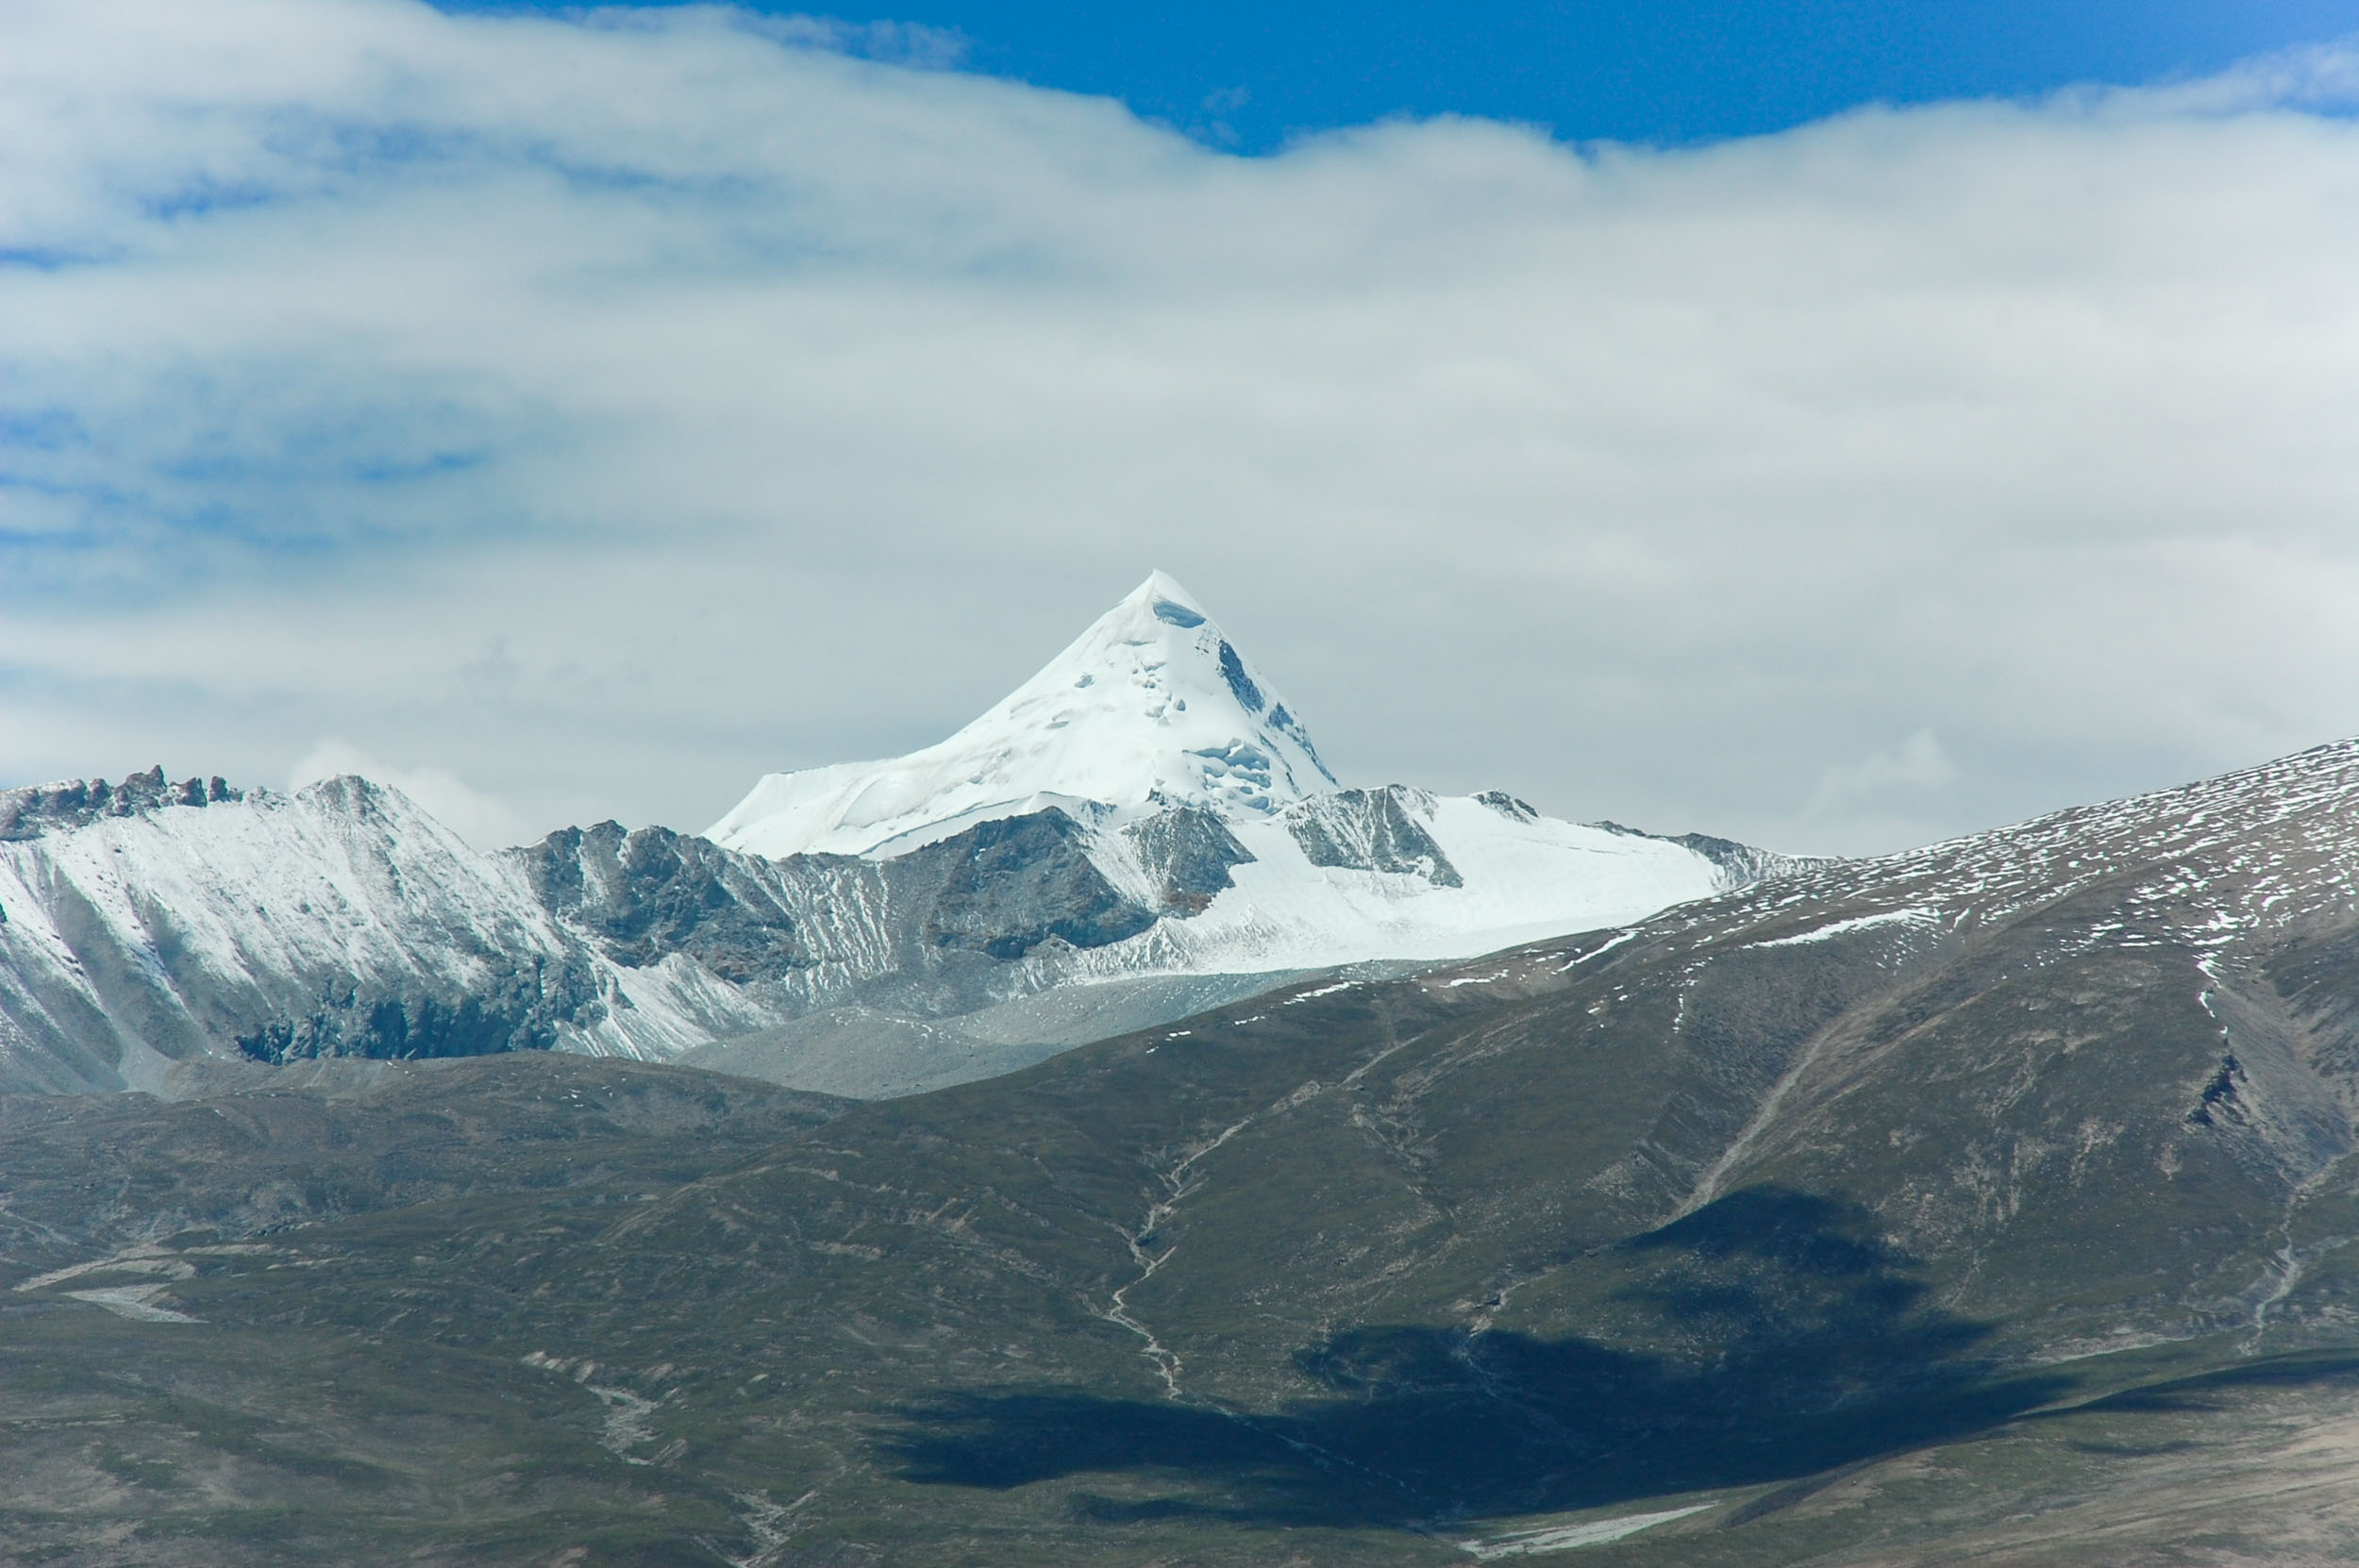 ニンチェンタングラ山脈 サムディン・カンサン峰